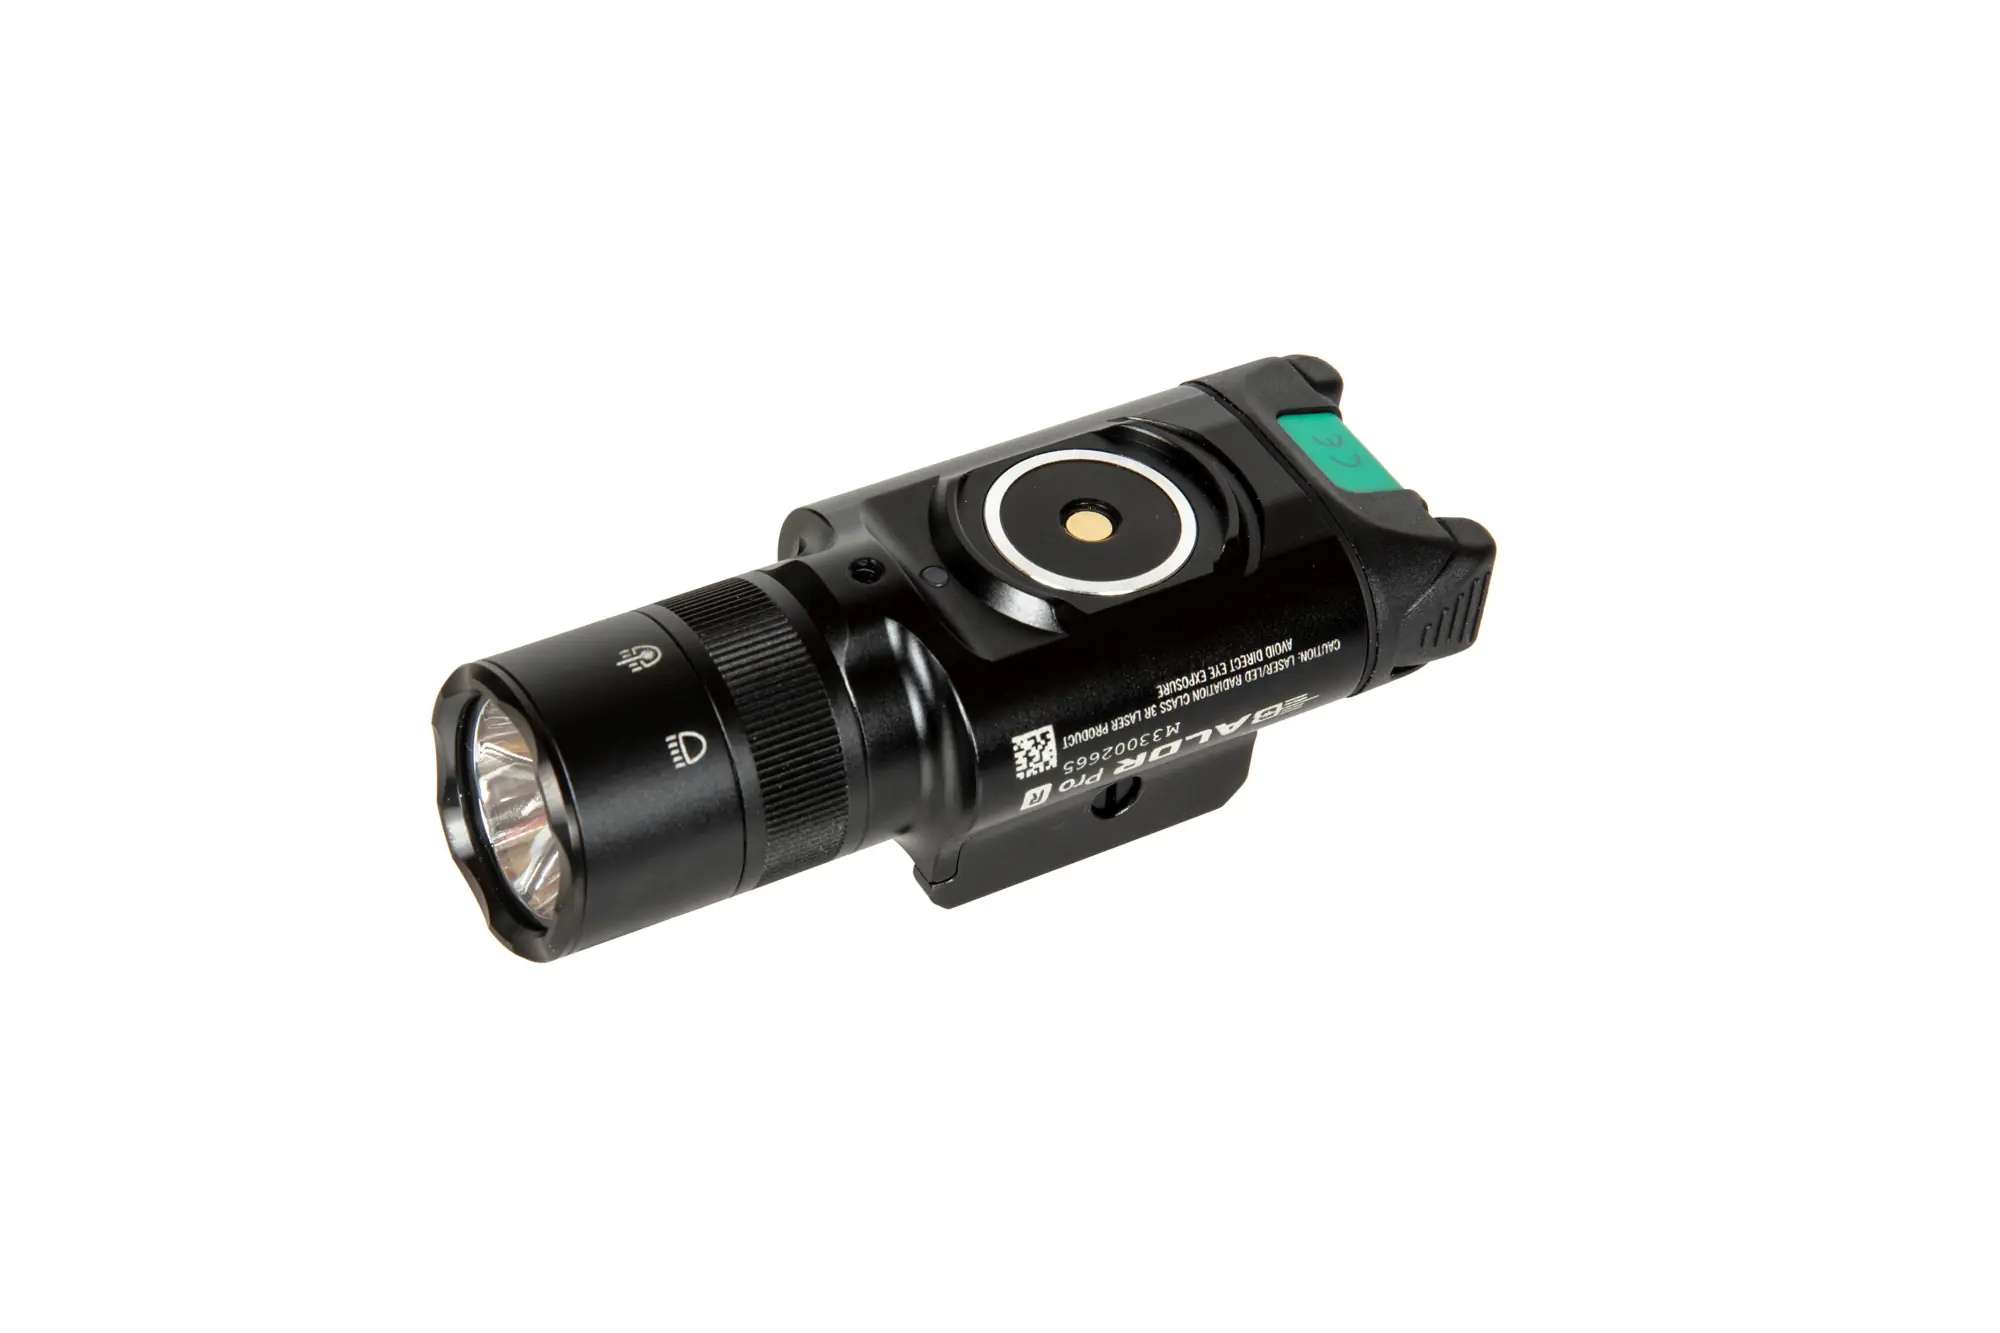 OLight Baldr Pro R 1.350 lumen e laser verde - BK